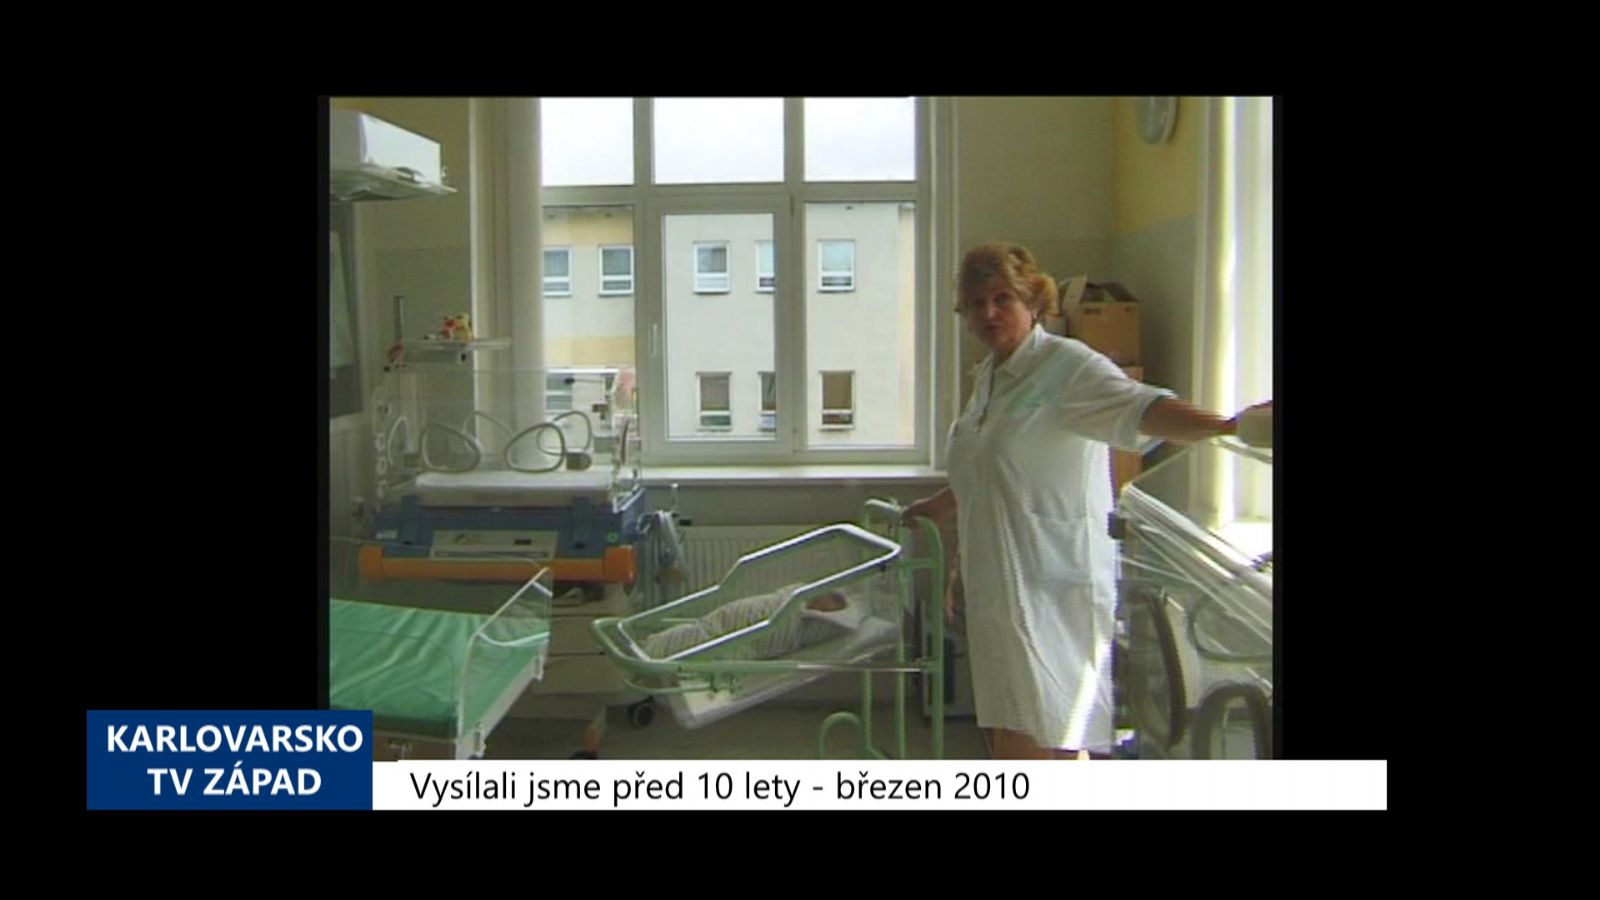 2010 – Cheb: Přeshraniční spolupráci nemocnic popíše nová studie (3985) (TV Západ)